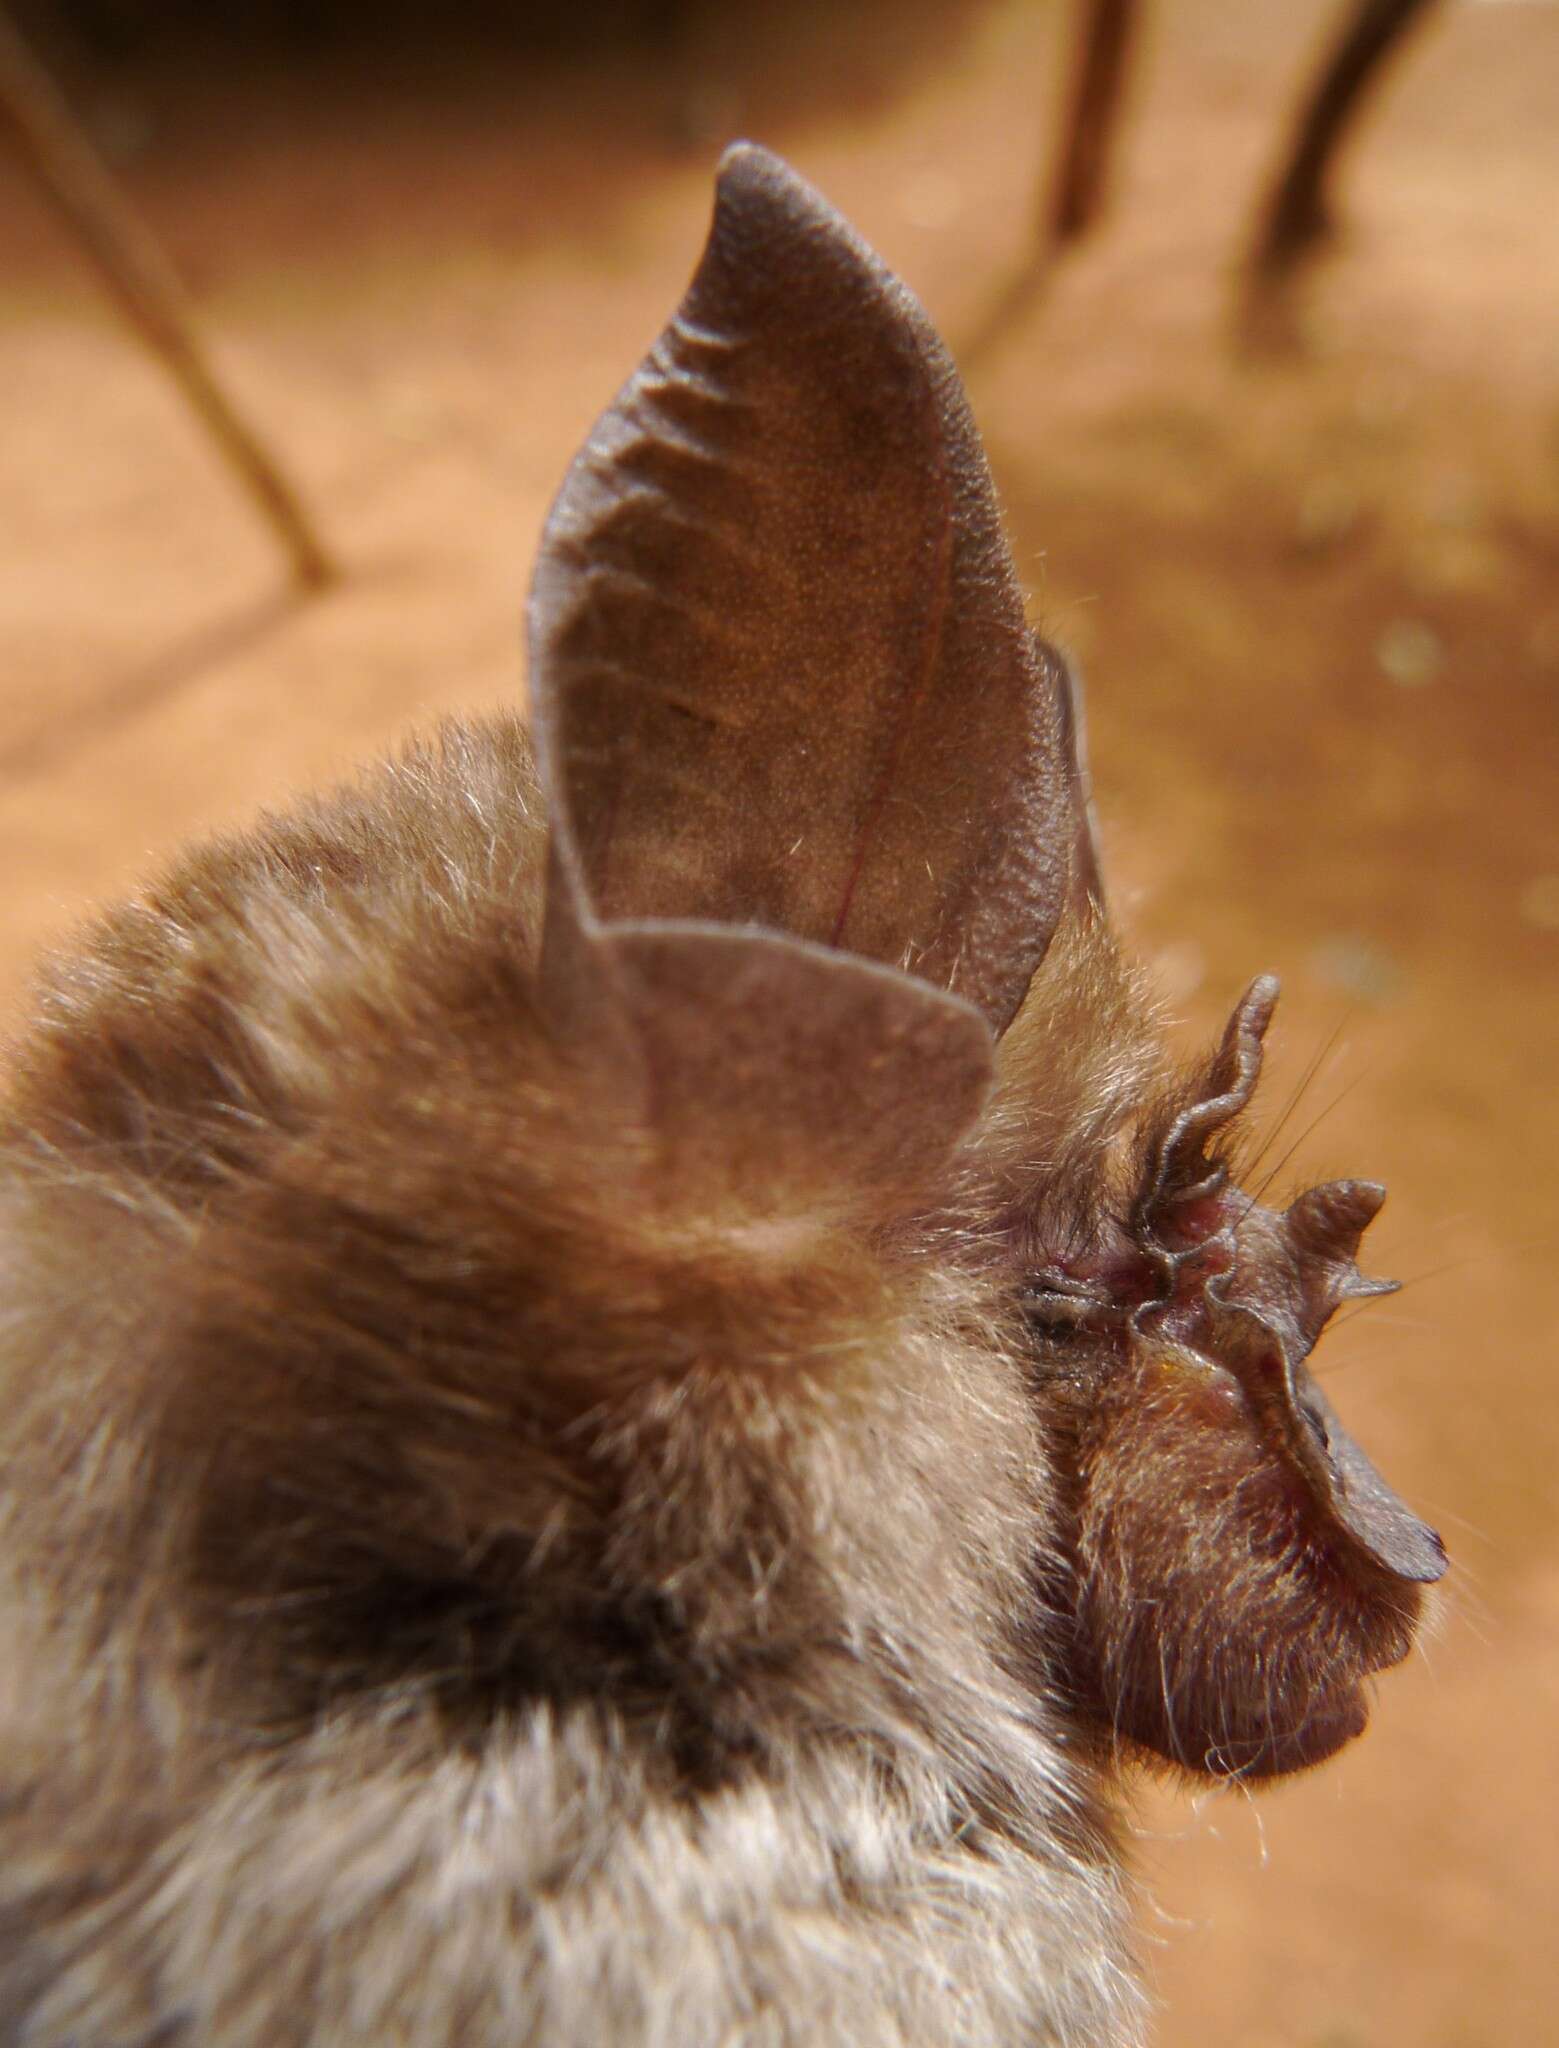 Image of Lander's Horseshoe Bat